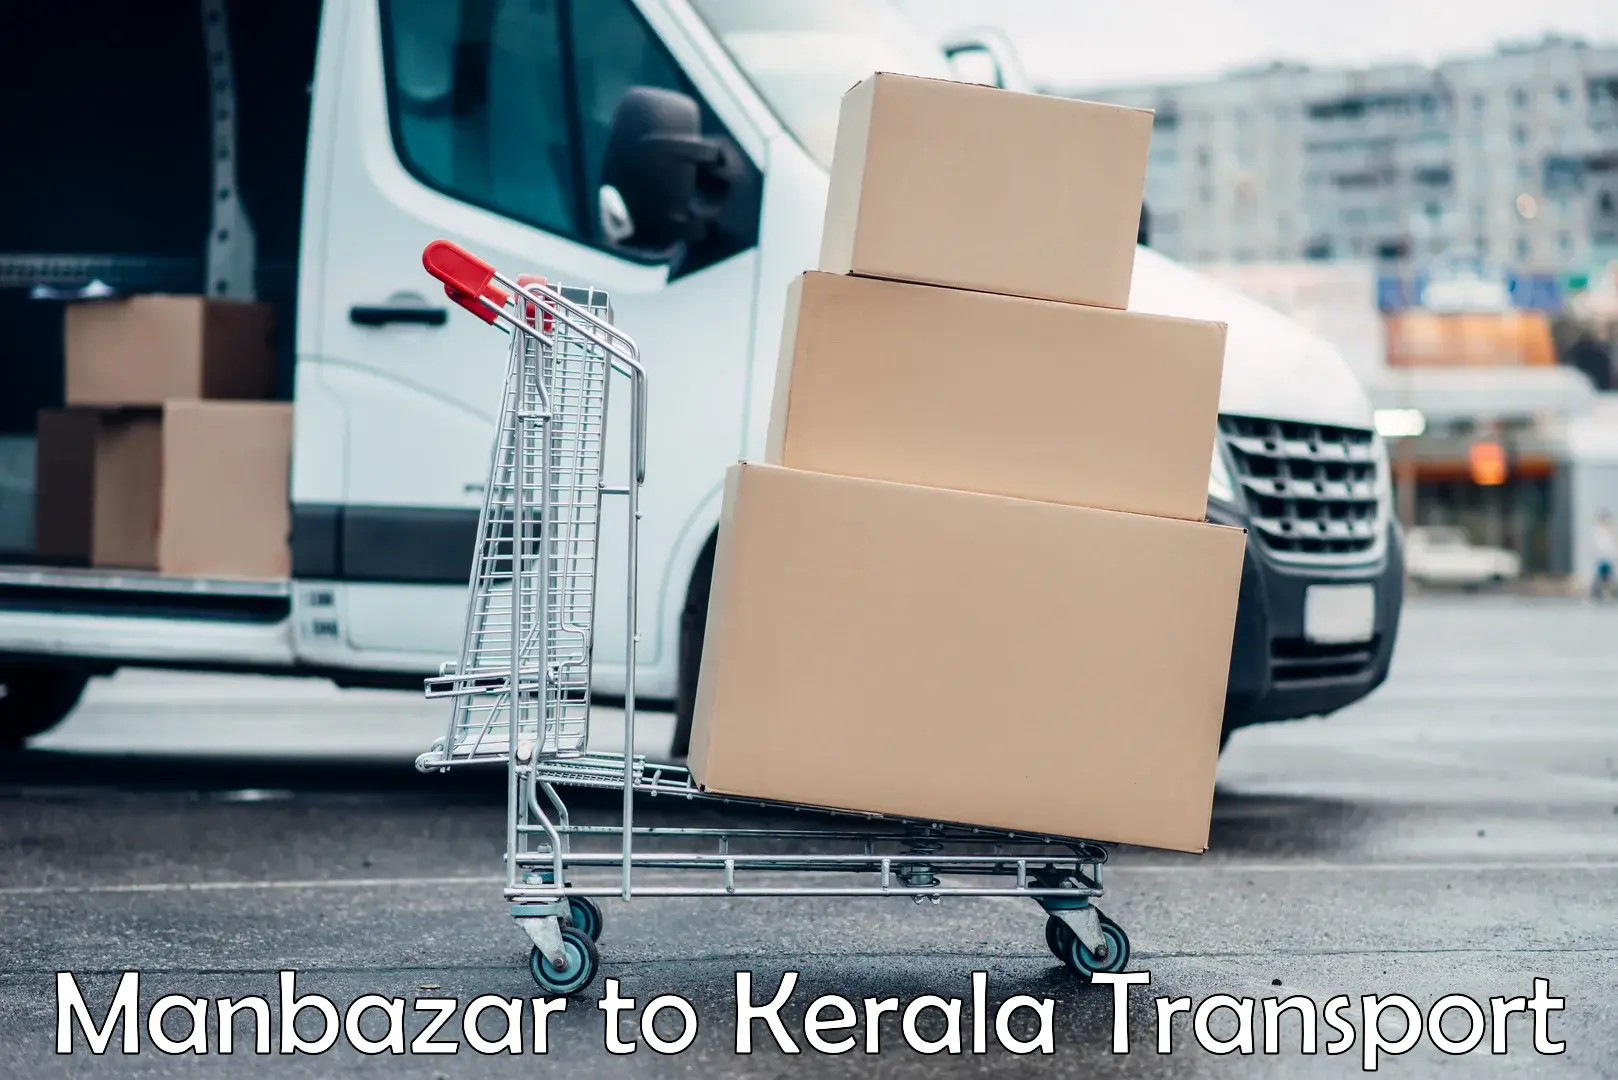 Shipping services Manbazar to Kochi